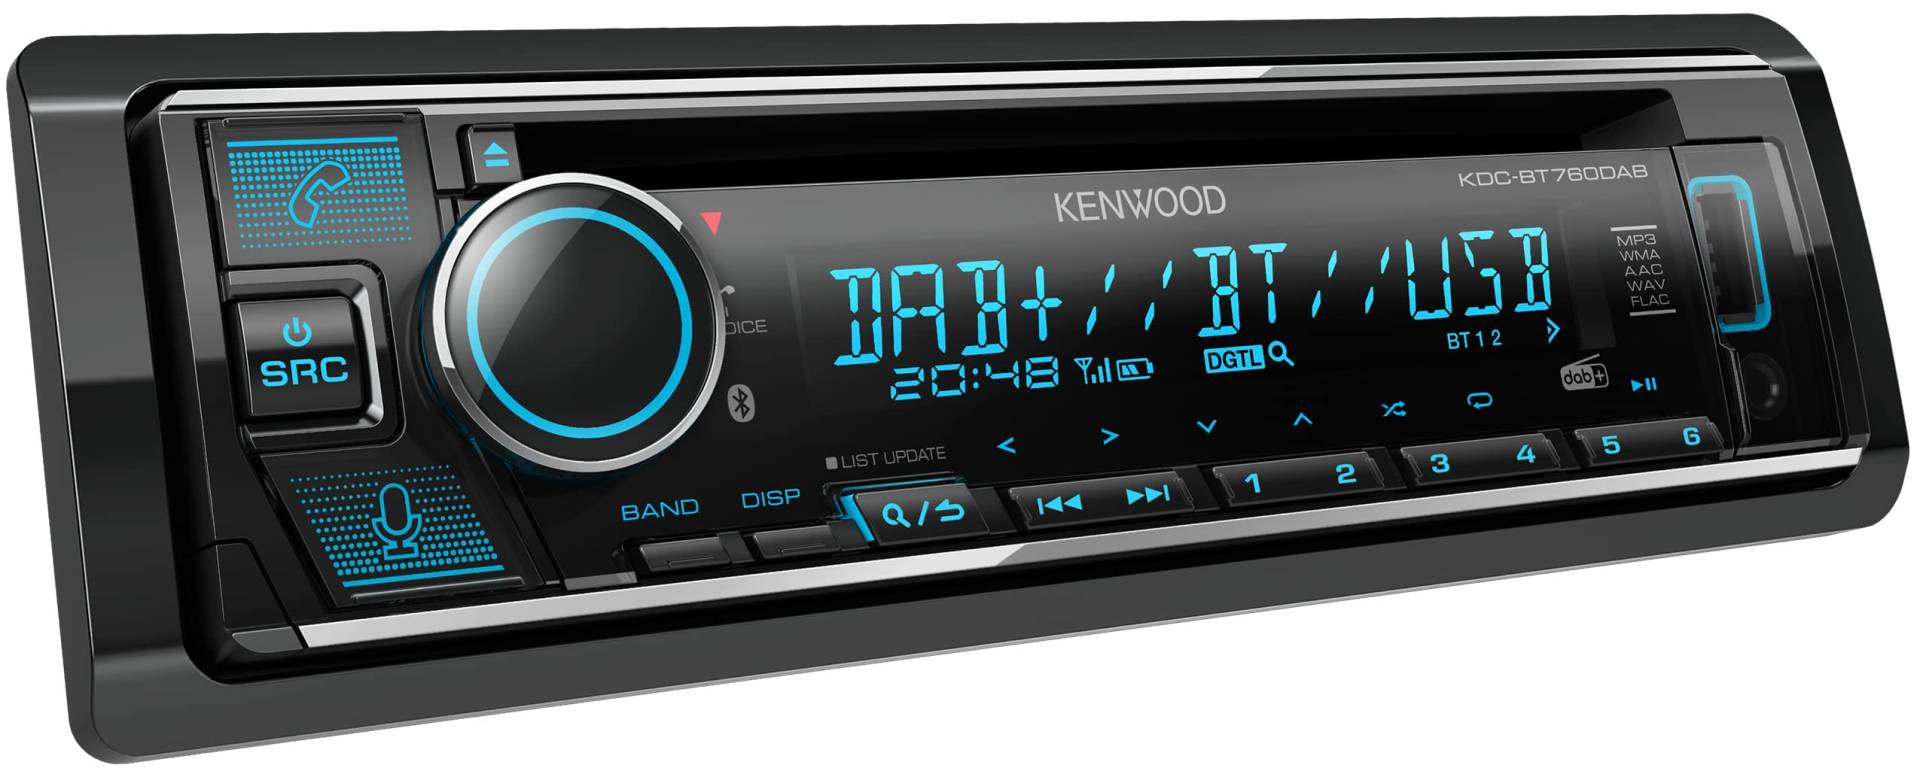 Kenwood KDC-BT760DAB CD-Autoradio mit DAB+ & Bluetooth Freisprecheinrichtung (USB, AUX-In, 2 x Pre-Out 2.5V, Amazon Alexa, Soundprozessor, 4x50 W, VAR. Beleuchtung, Antenne) von Kenwood